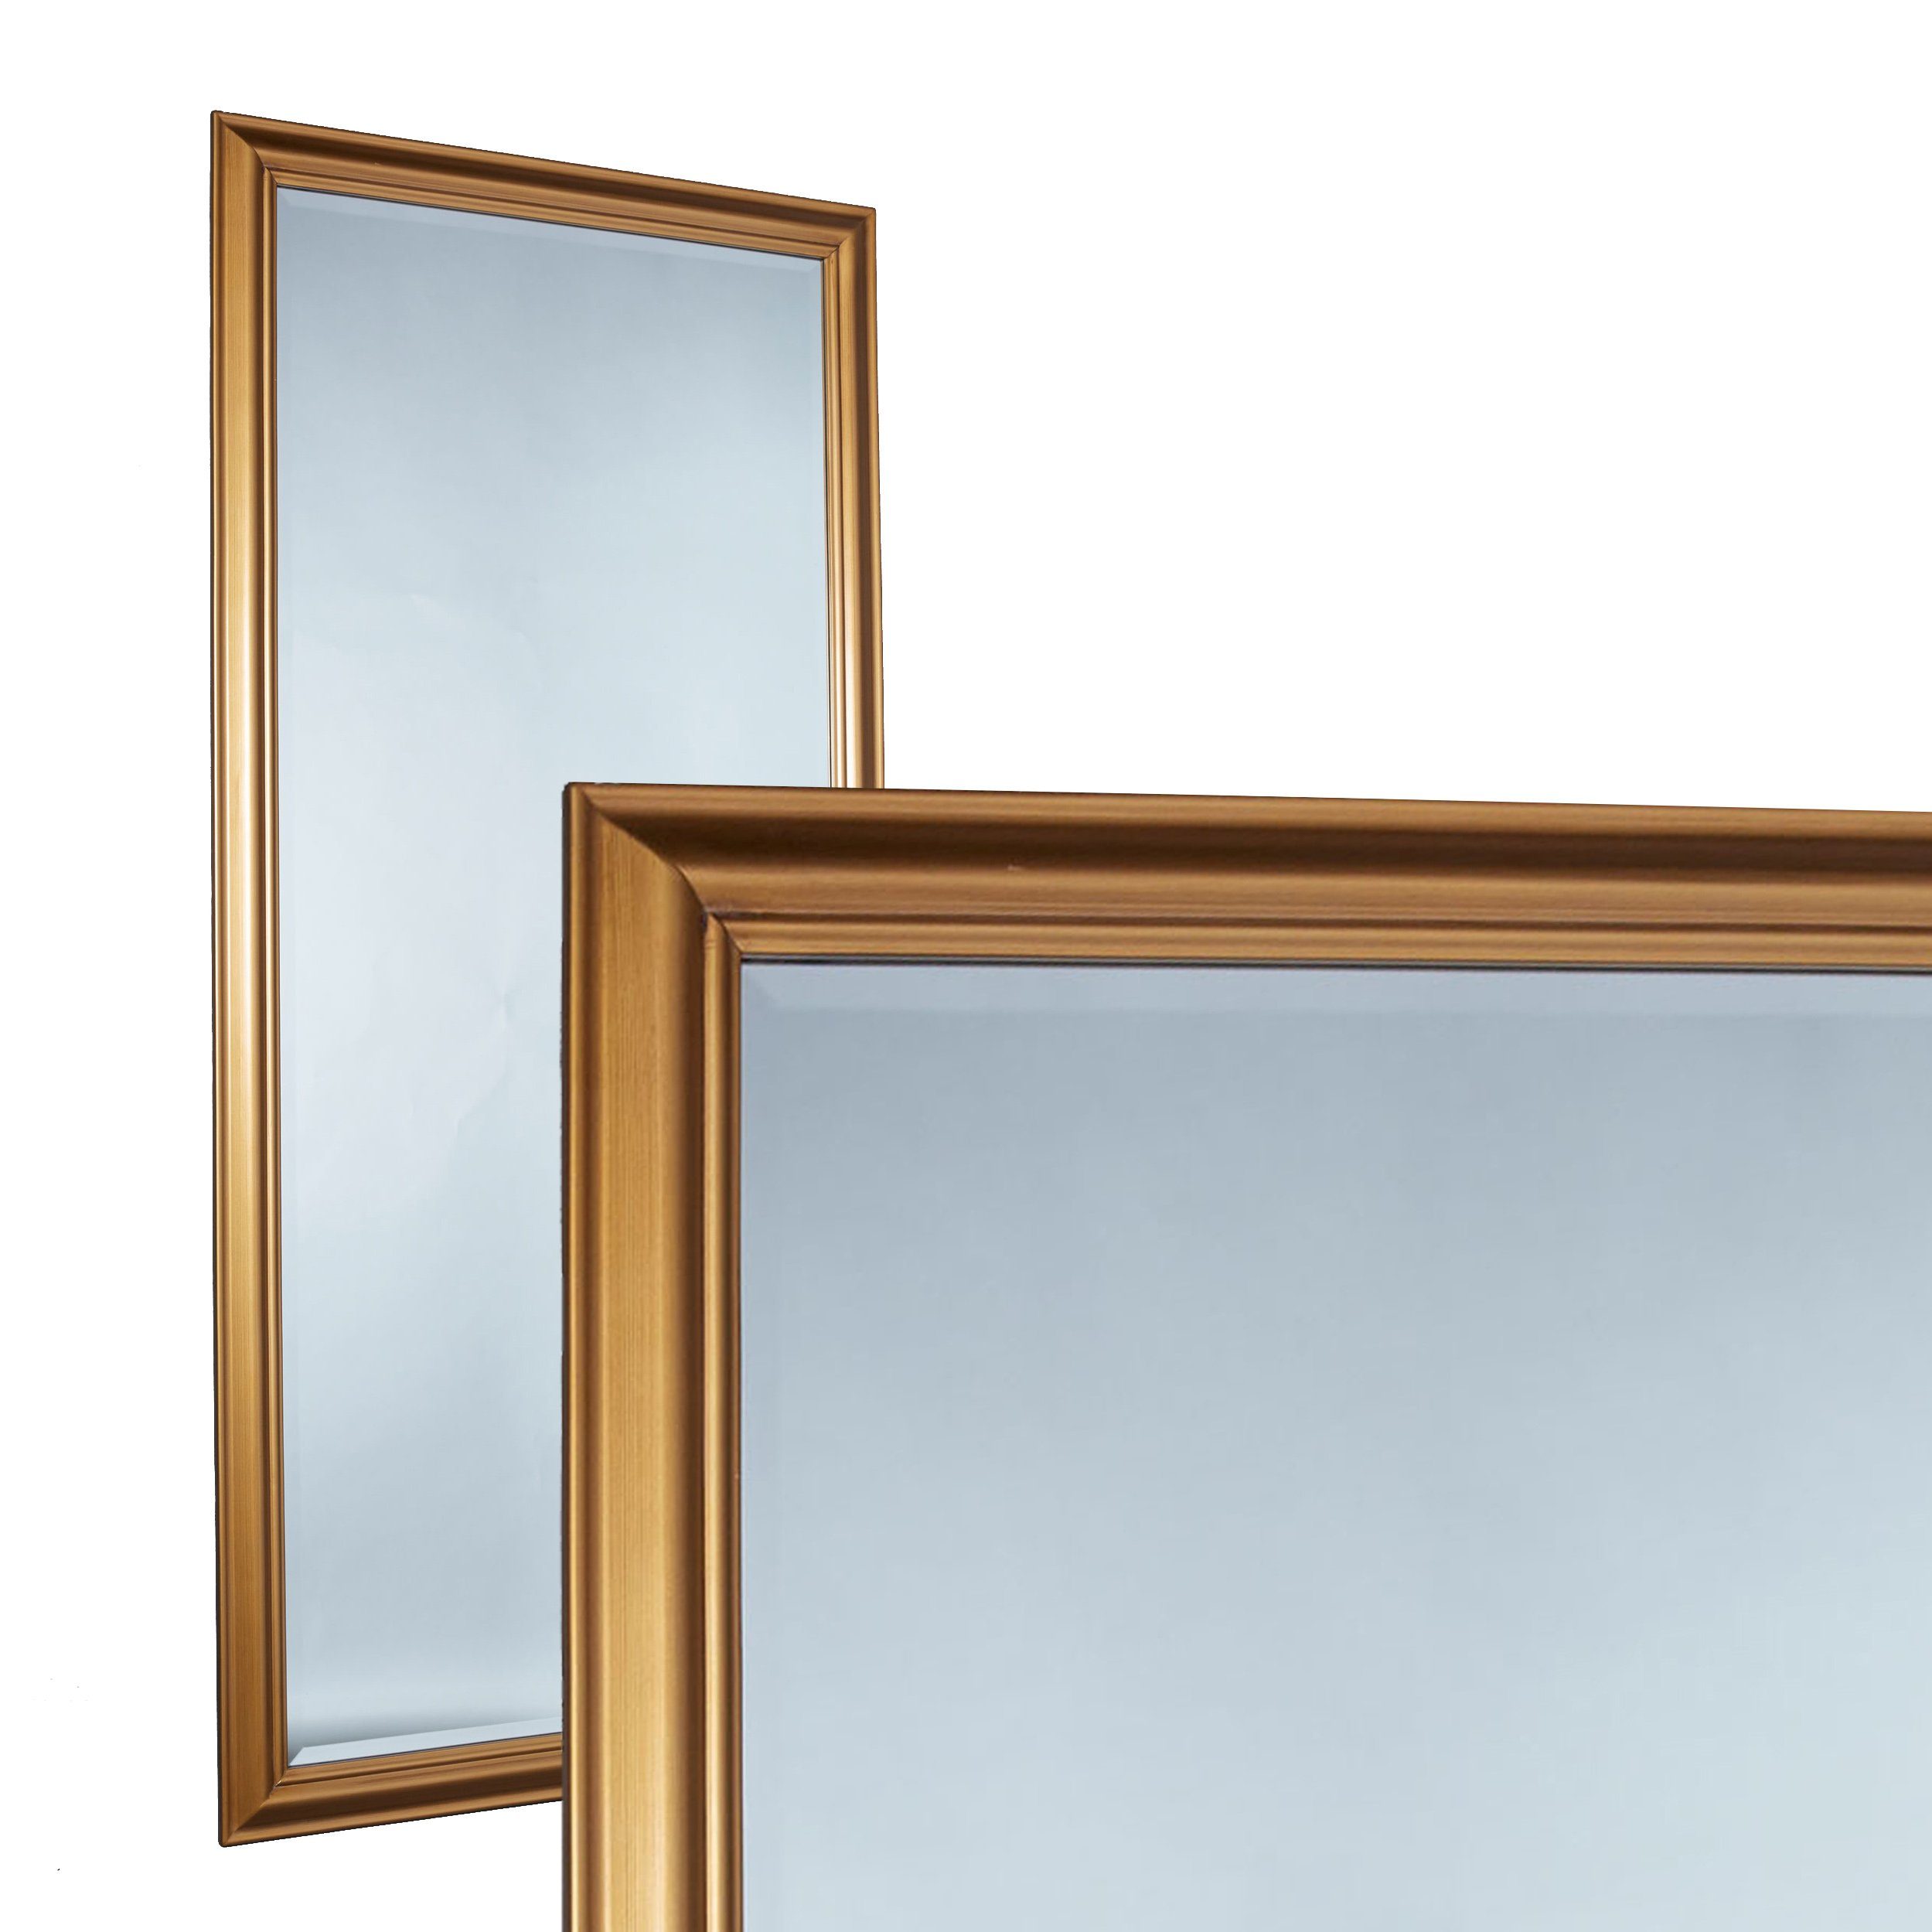 LC Home Wandspiegel LC Home Wandspiegel Spiegel ca. 180 x 80 cm schlichter Landhaus-Stil gold